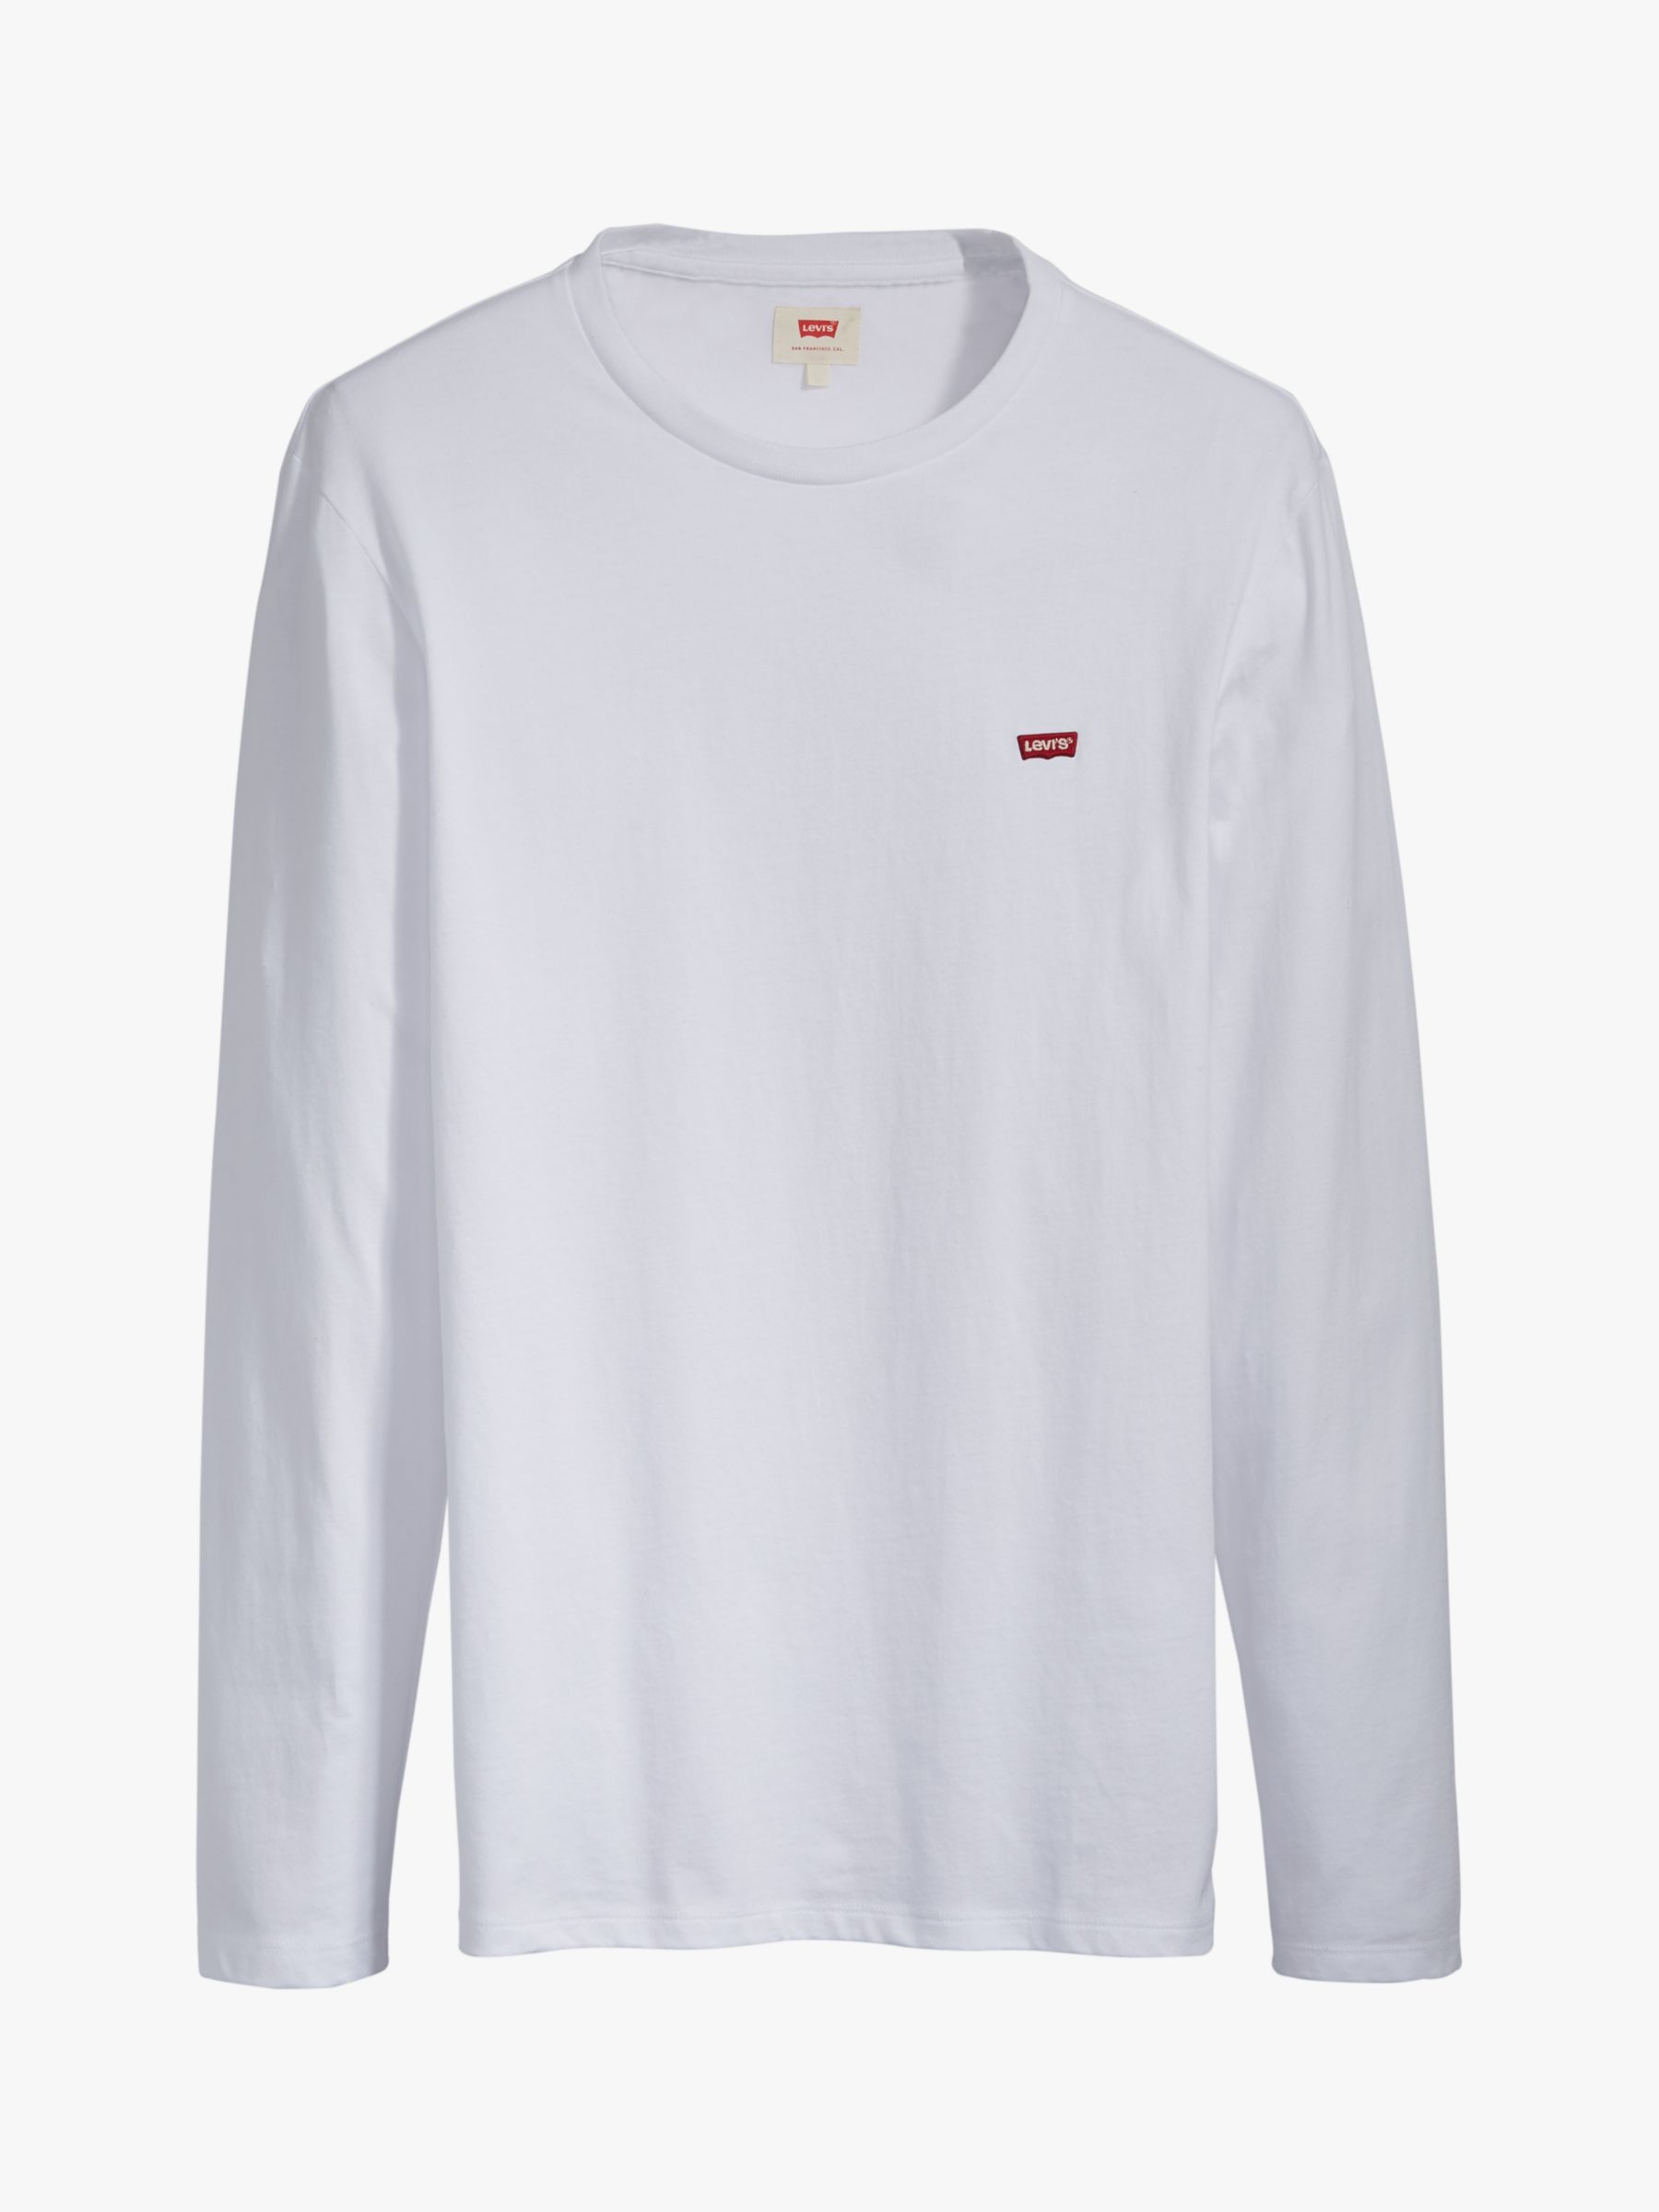 Levi's Housemark Logo T-Shirt, White, S